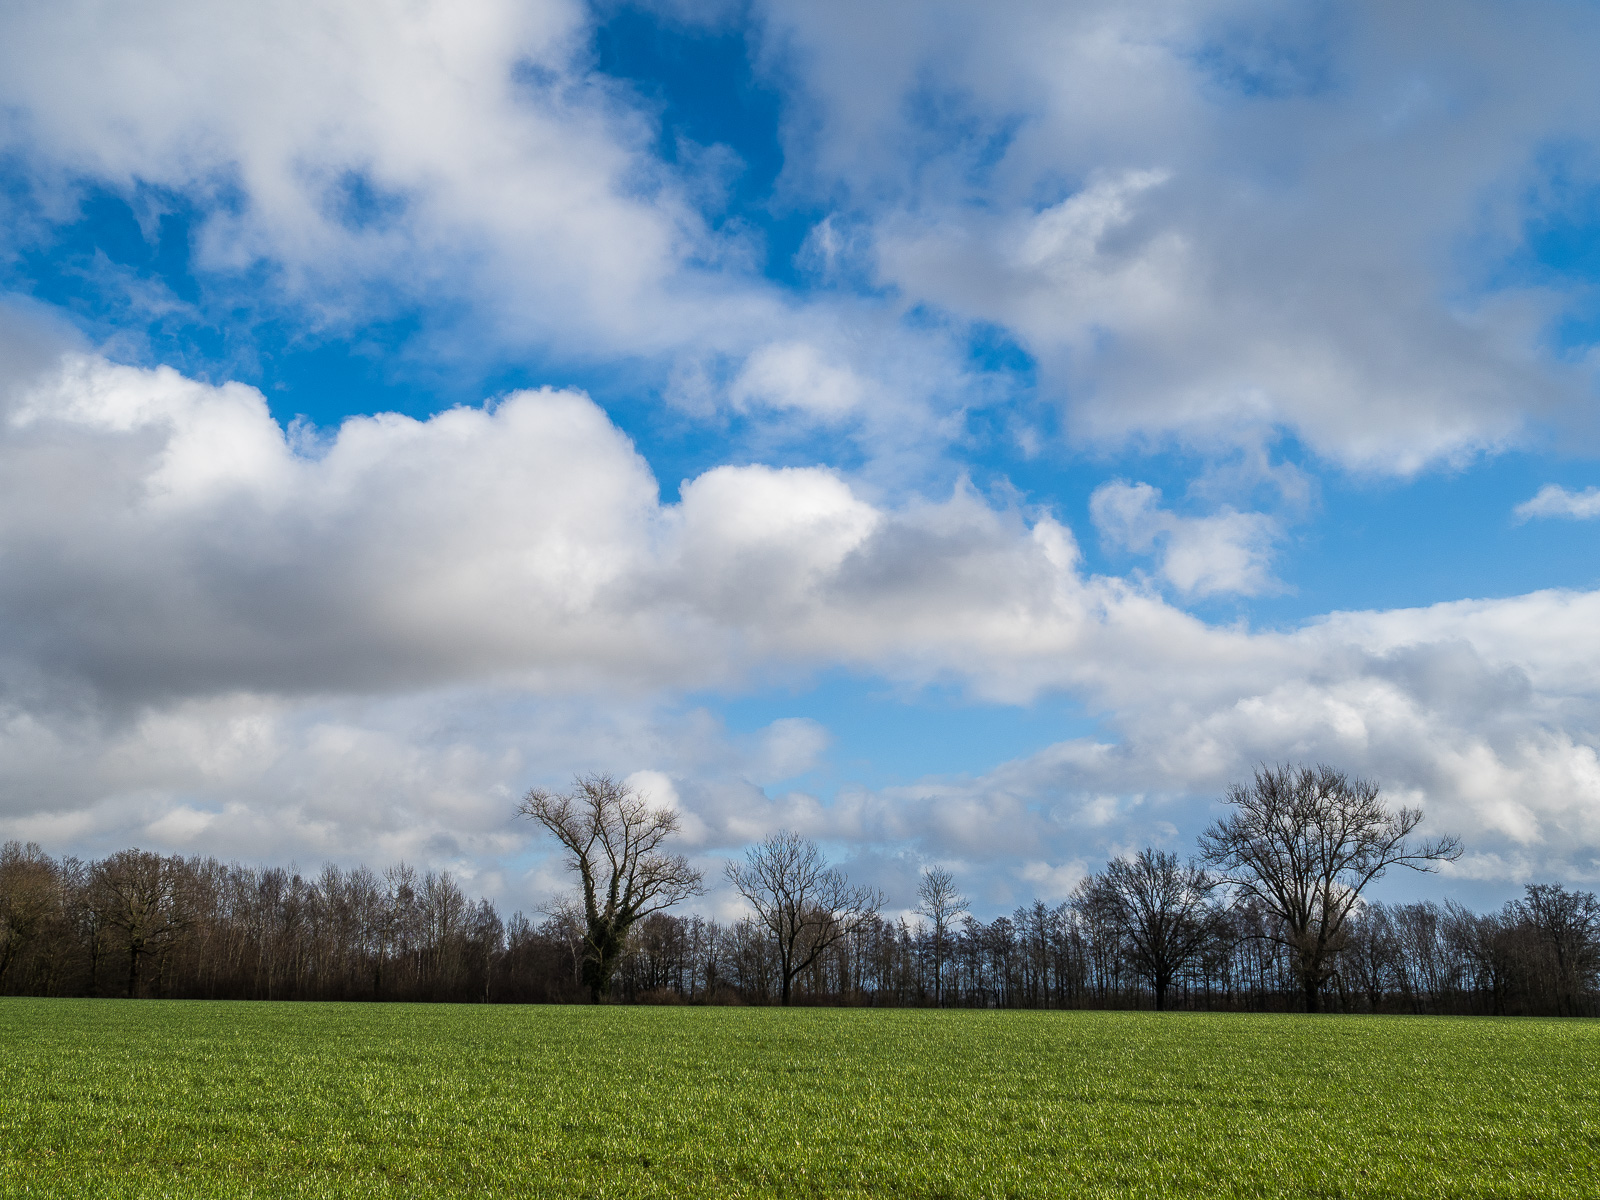 eine Wolkenlandschaft, viele Häufchenwolken vor leuchtend blauem Himmel, füllt die oberen drei Viertel des Bildes. Dann ein Streifen niedriger kahler Büsche und Bäume, ganz unten ein Streifen grüner Wiese